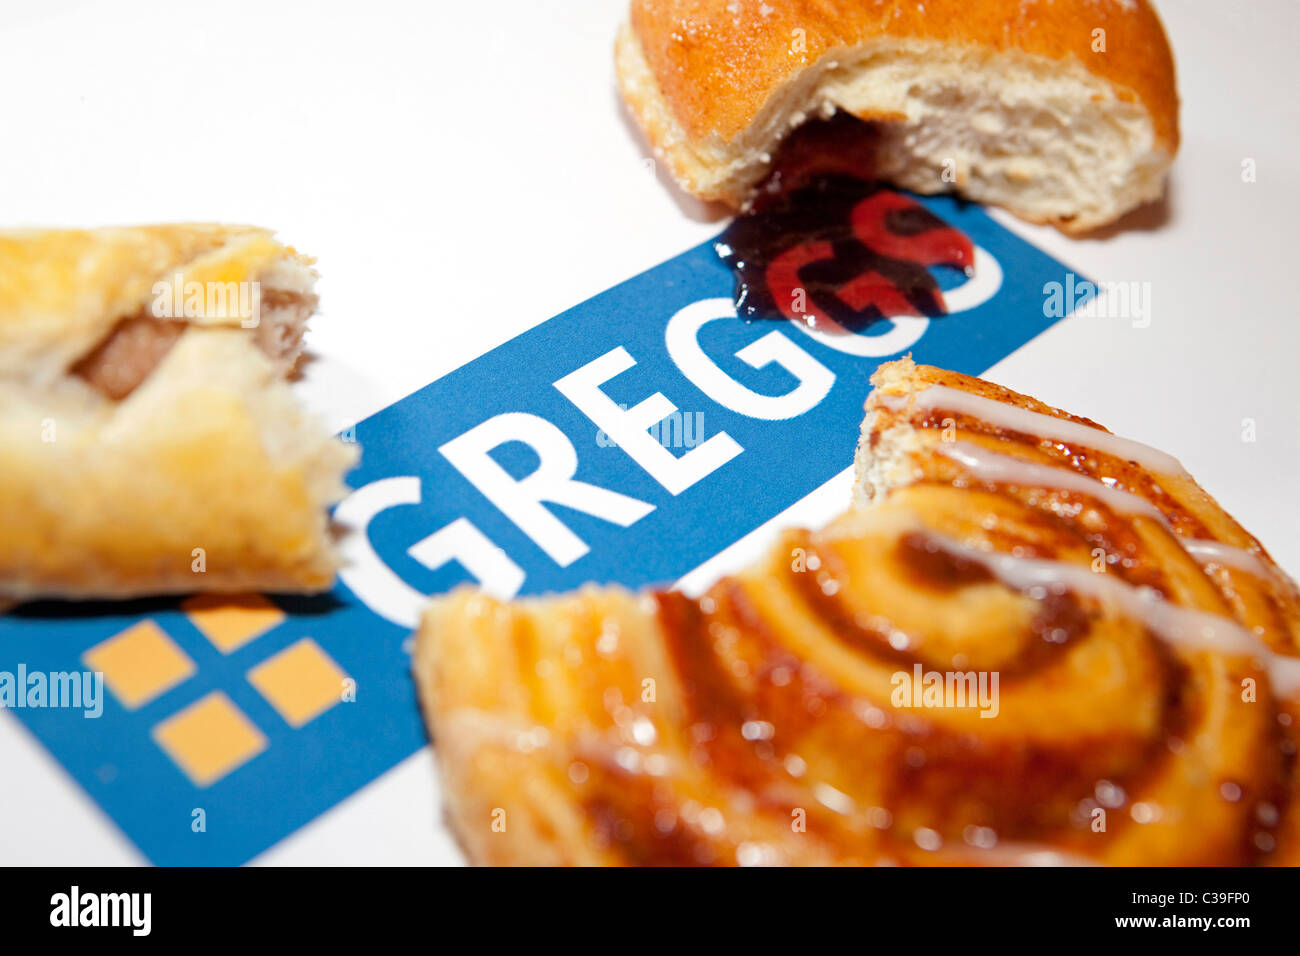 Anschauliches Bild der Produkte von Greggs Bäcker gemacht. Stockfoto